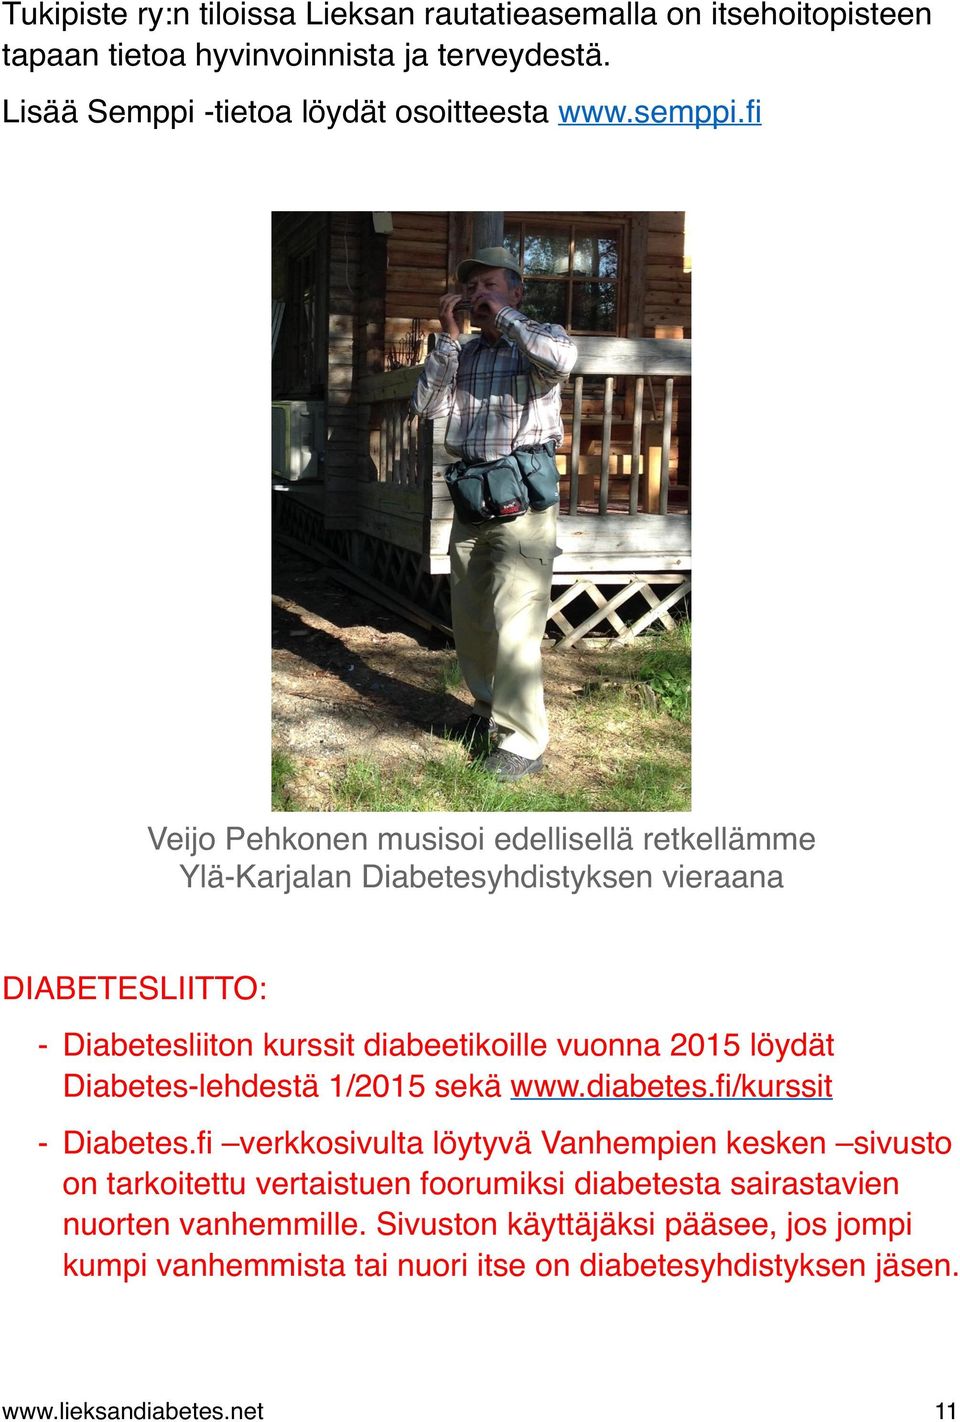 löydät Diabetes-lehdestä 1/2015 sekä www.diabetes.fi/kurssit - Diabetes.